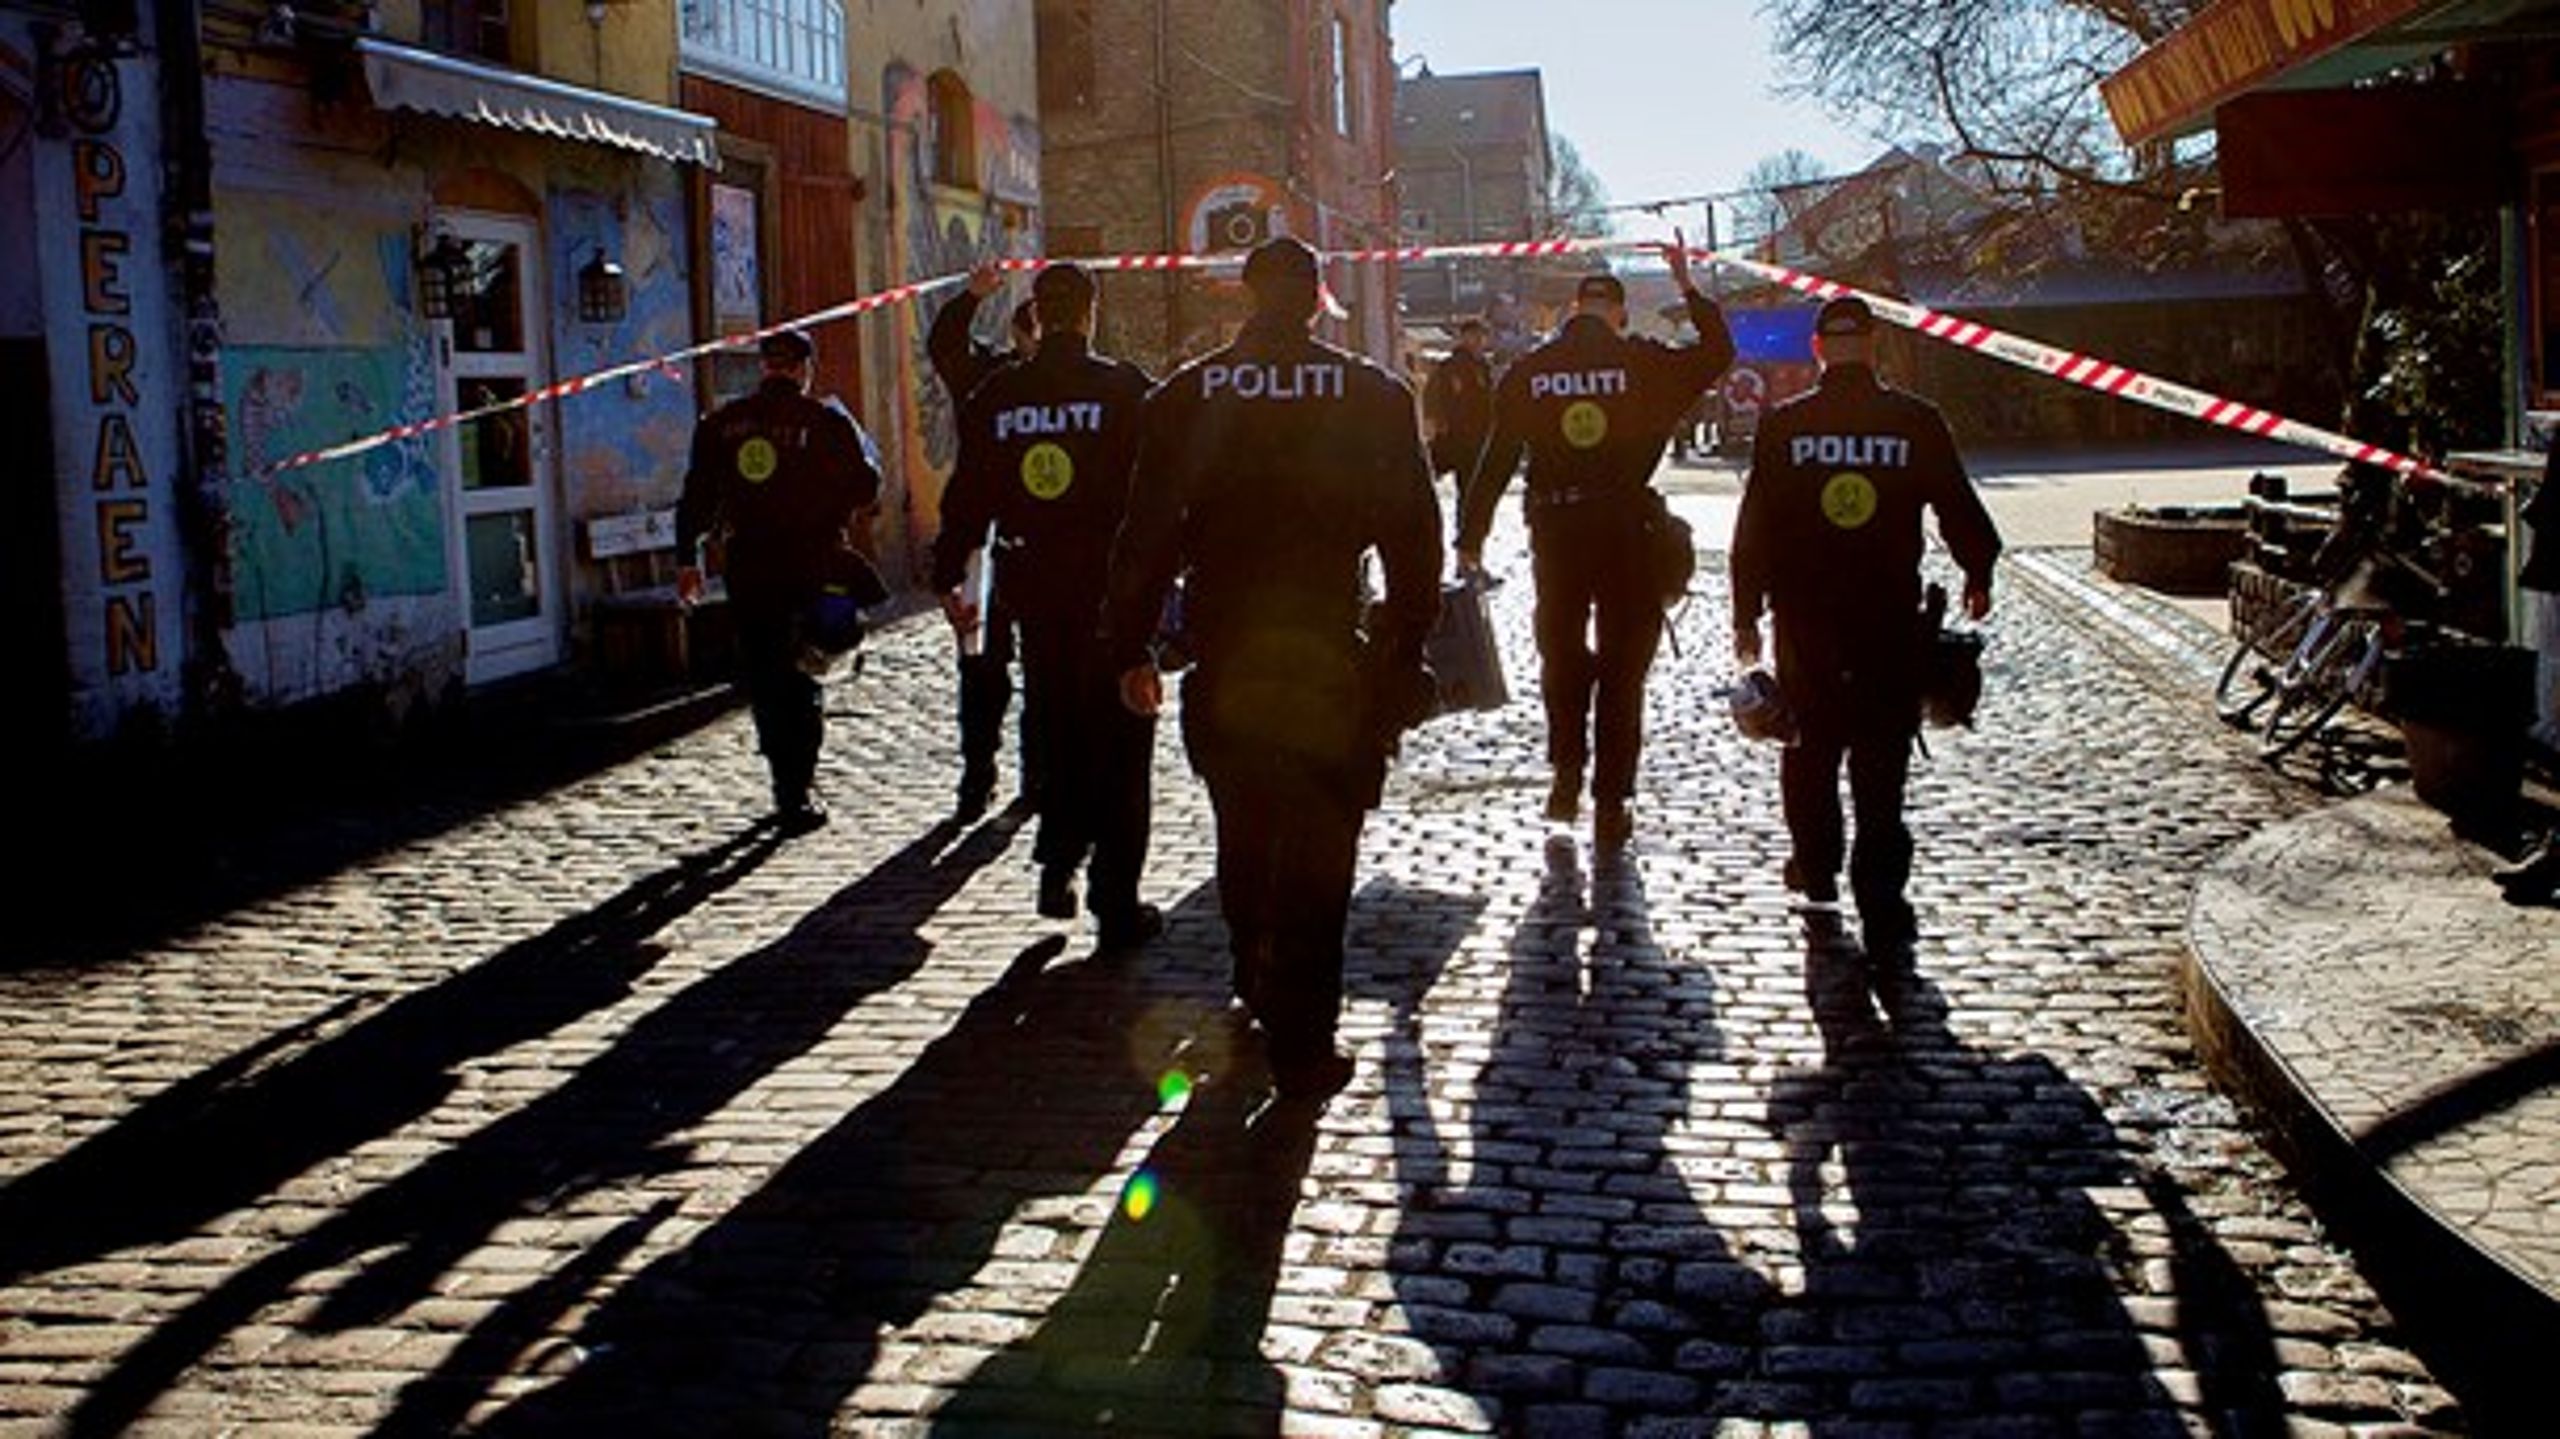 Er kriminaliteten i Danmark reelt faldende – eller har mange borgere snarere opgivet at få politiet til at rykke ud? Det&nbsp;er Politiforbundet og Rigspolitiet ikke helt enige om.&nbsp;<br>